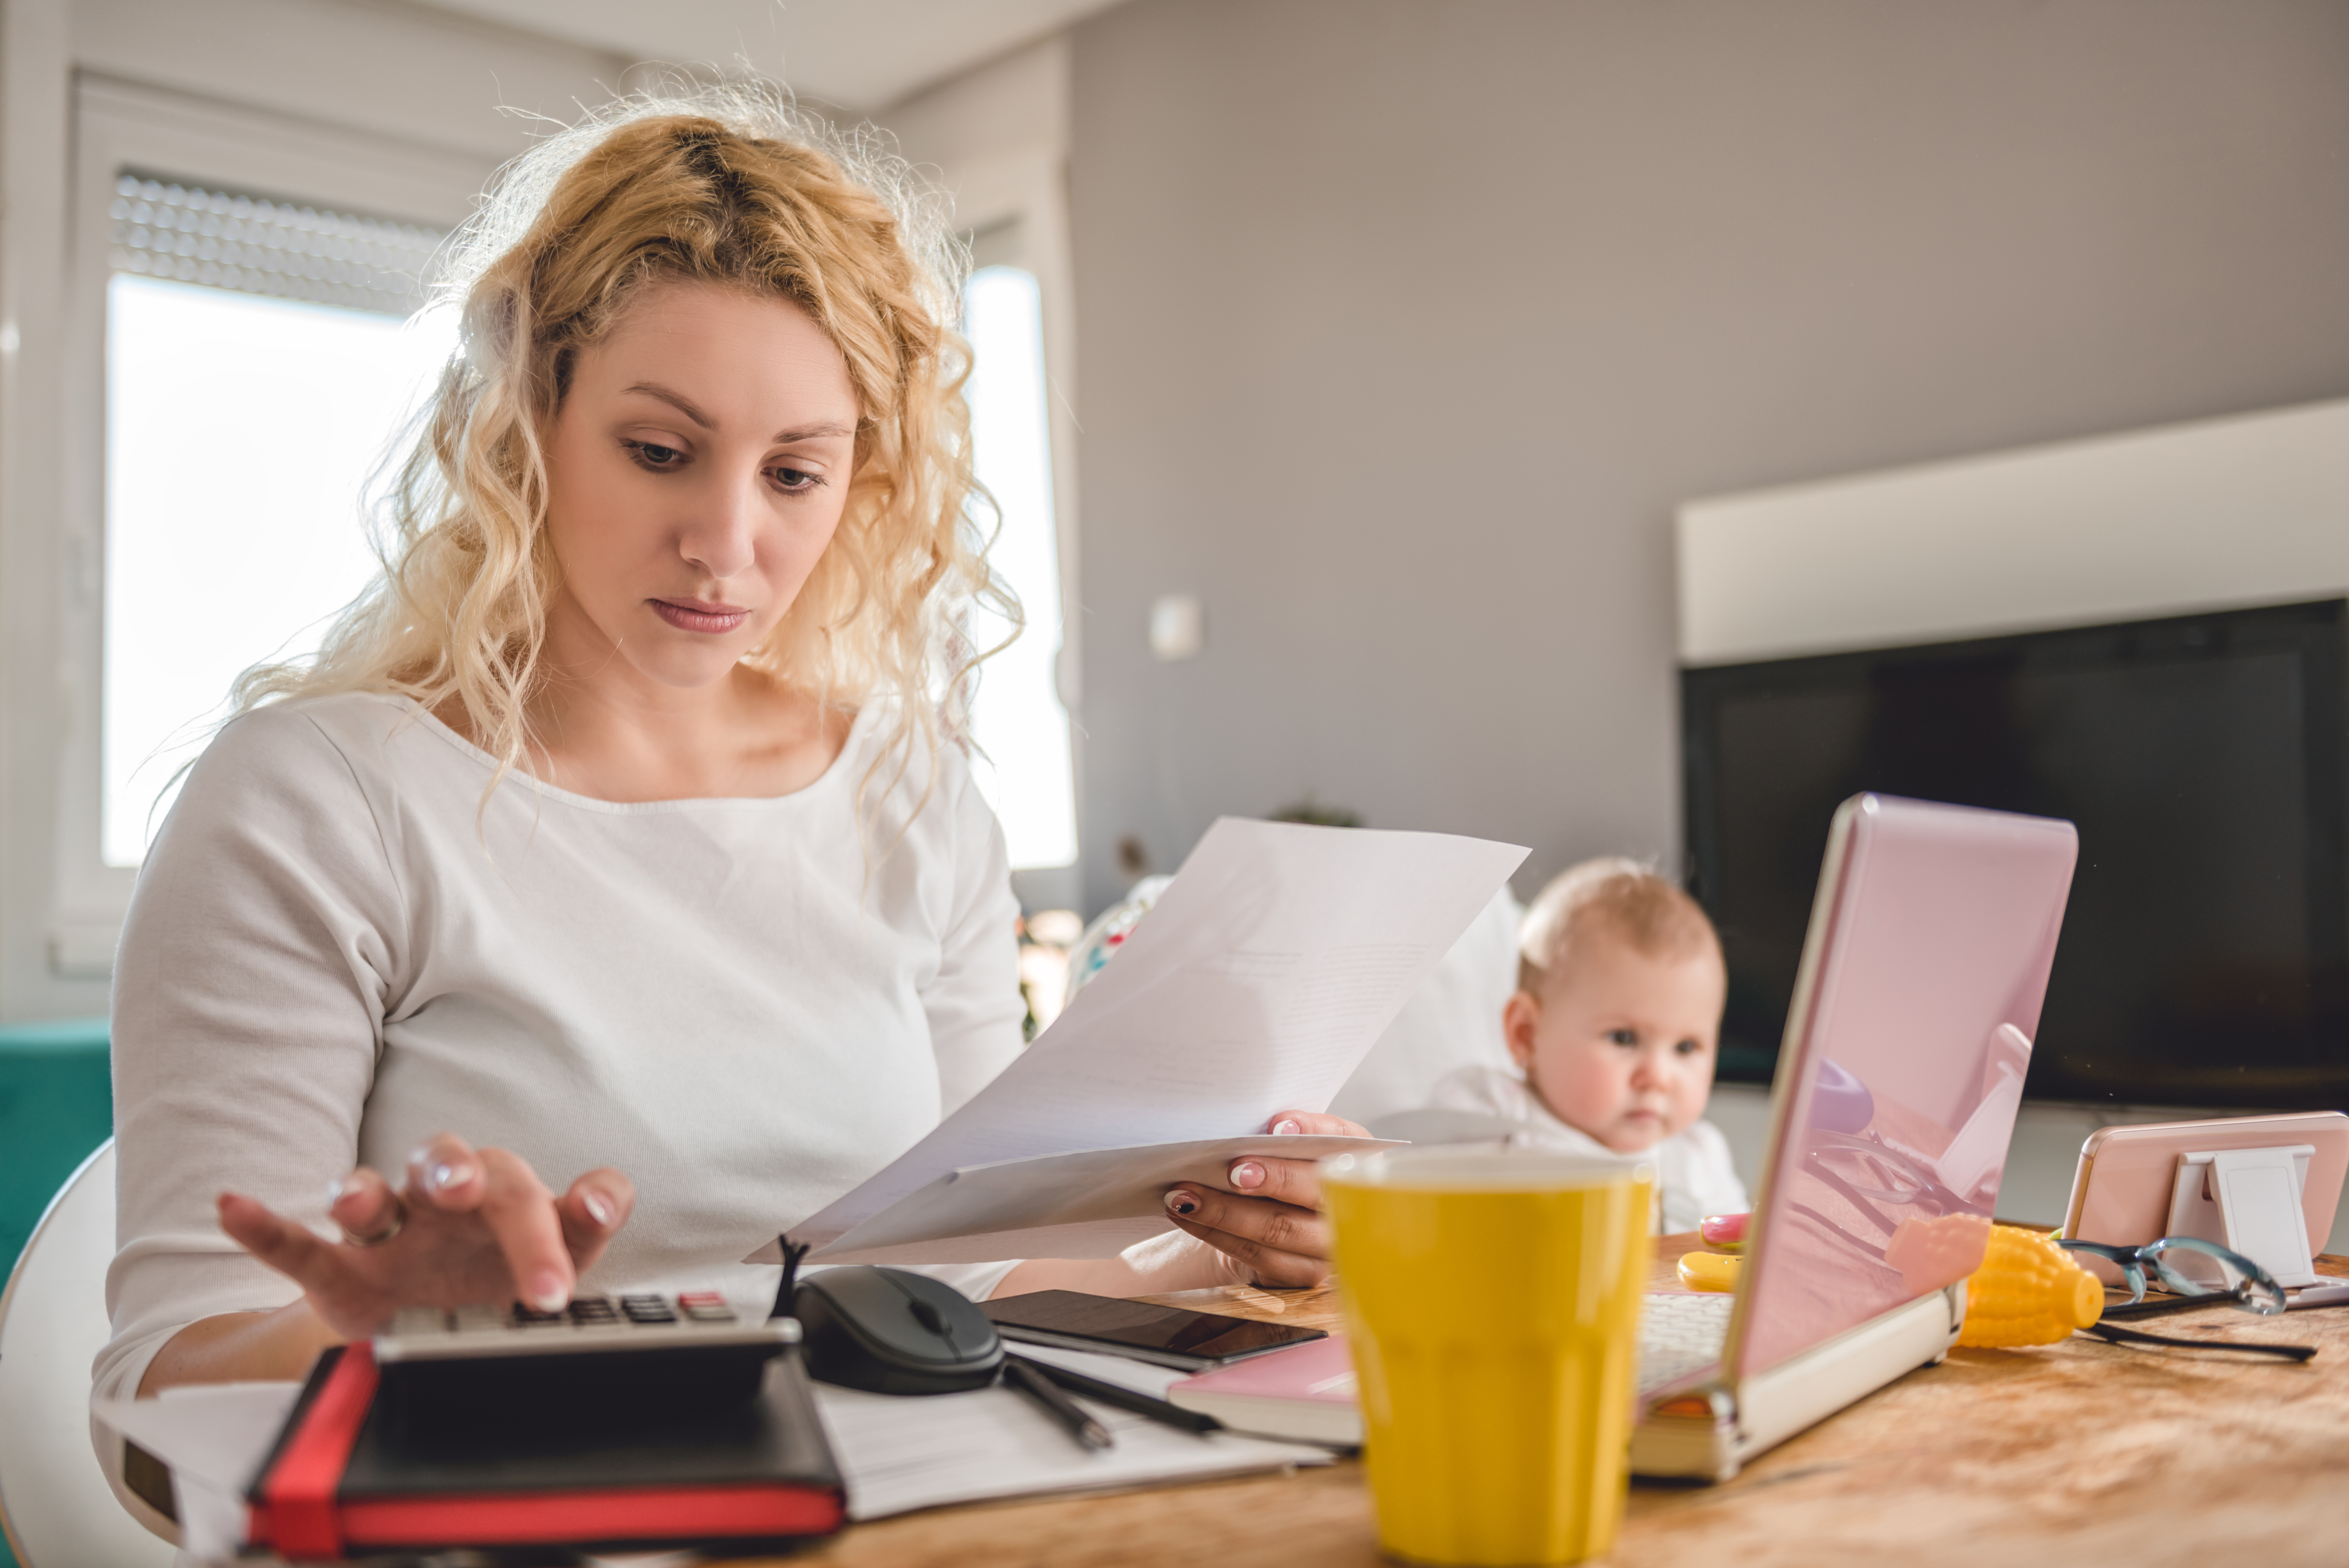 Une femme avec un enfant tenant une feuille de papier tout en calculant | Source : Shutterstock